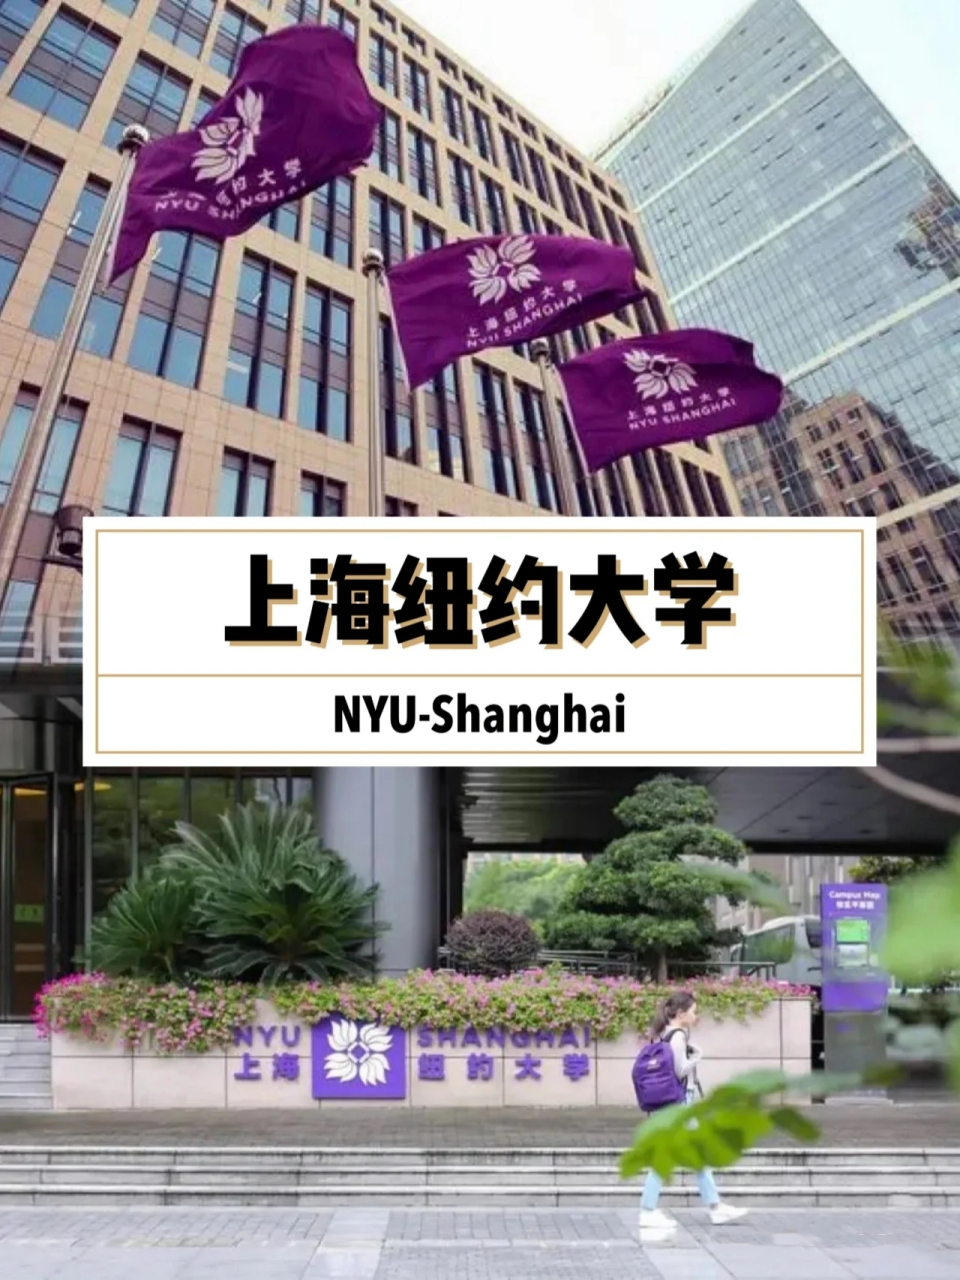 上海纽约大学是纽约大学在上海中外合作办学的分校,提供硕士,博士以及